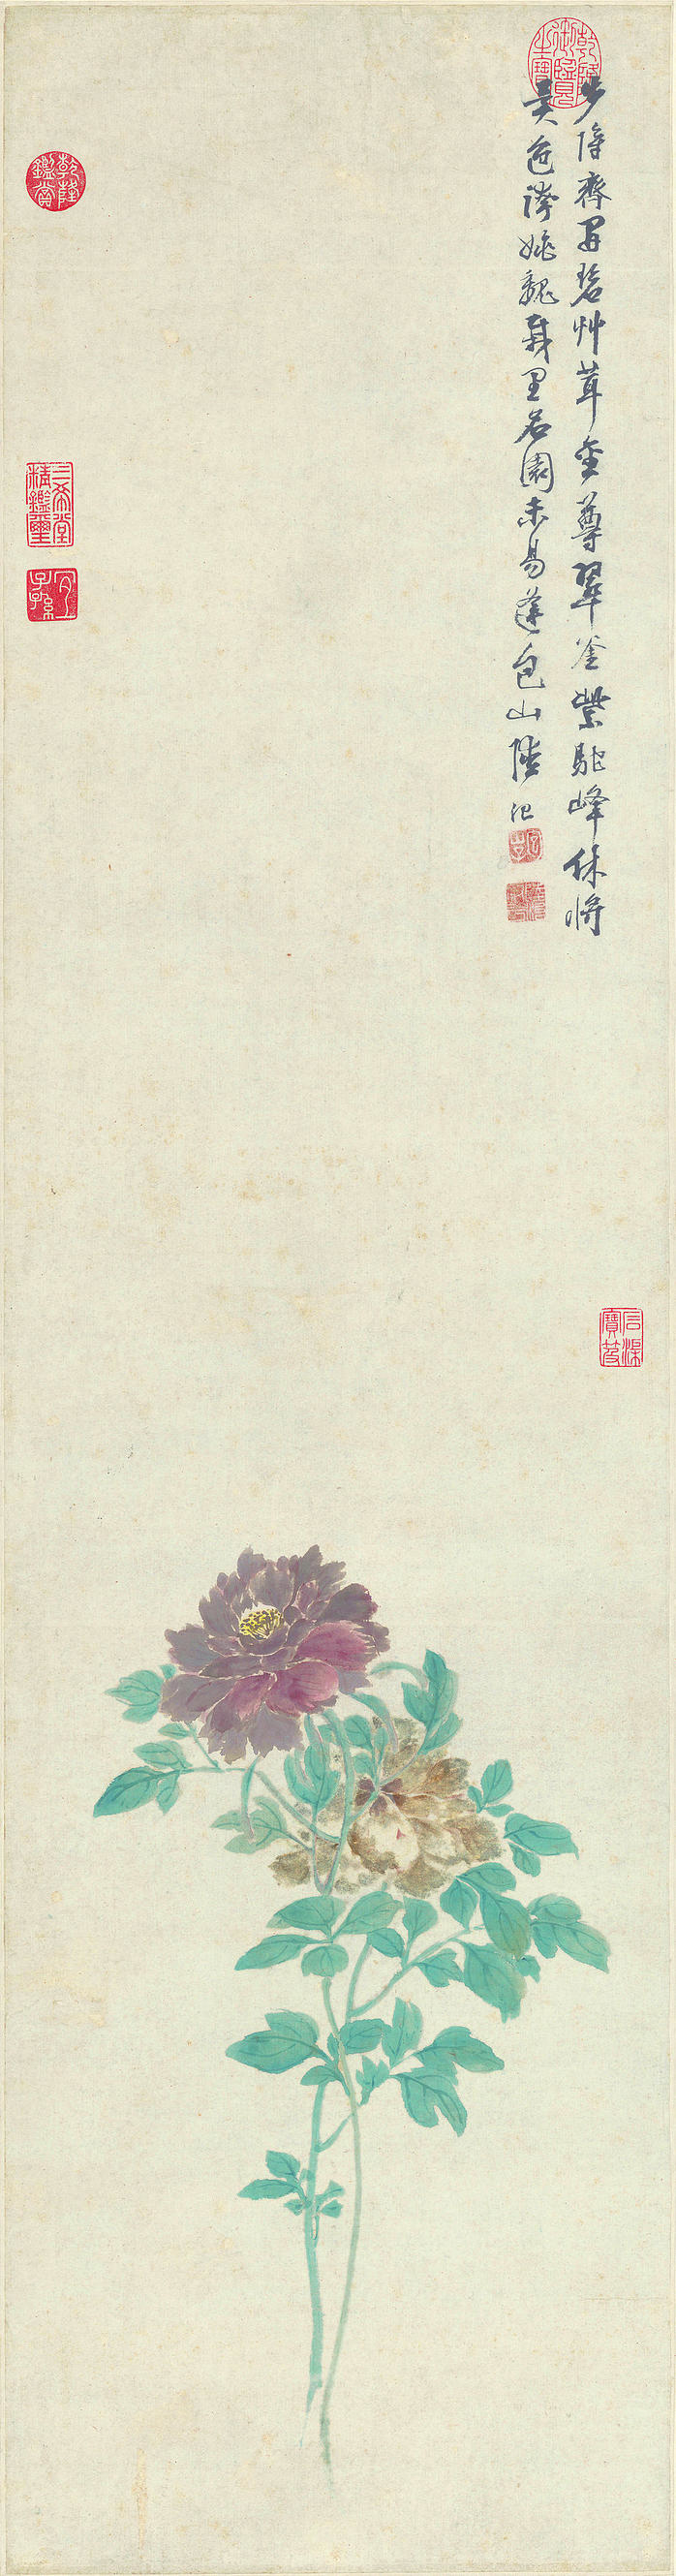 明 陆治 牡丹图轴 纸本 (3746x14269px 300)